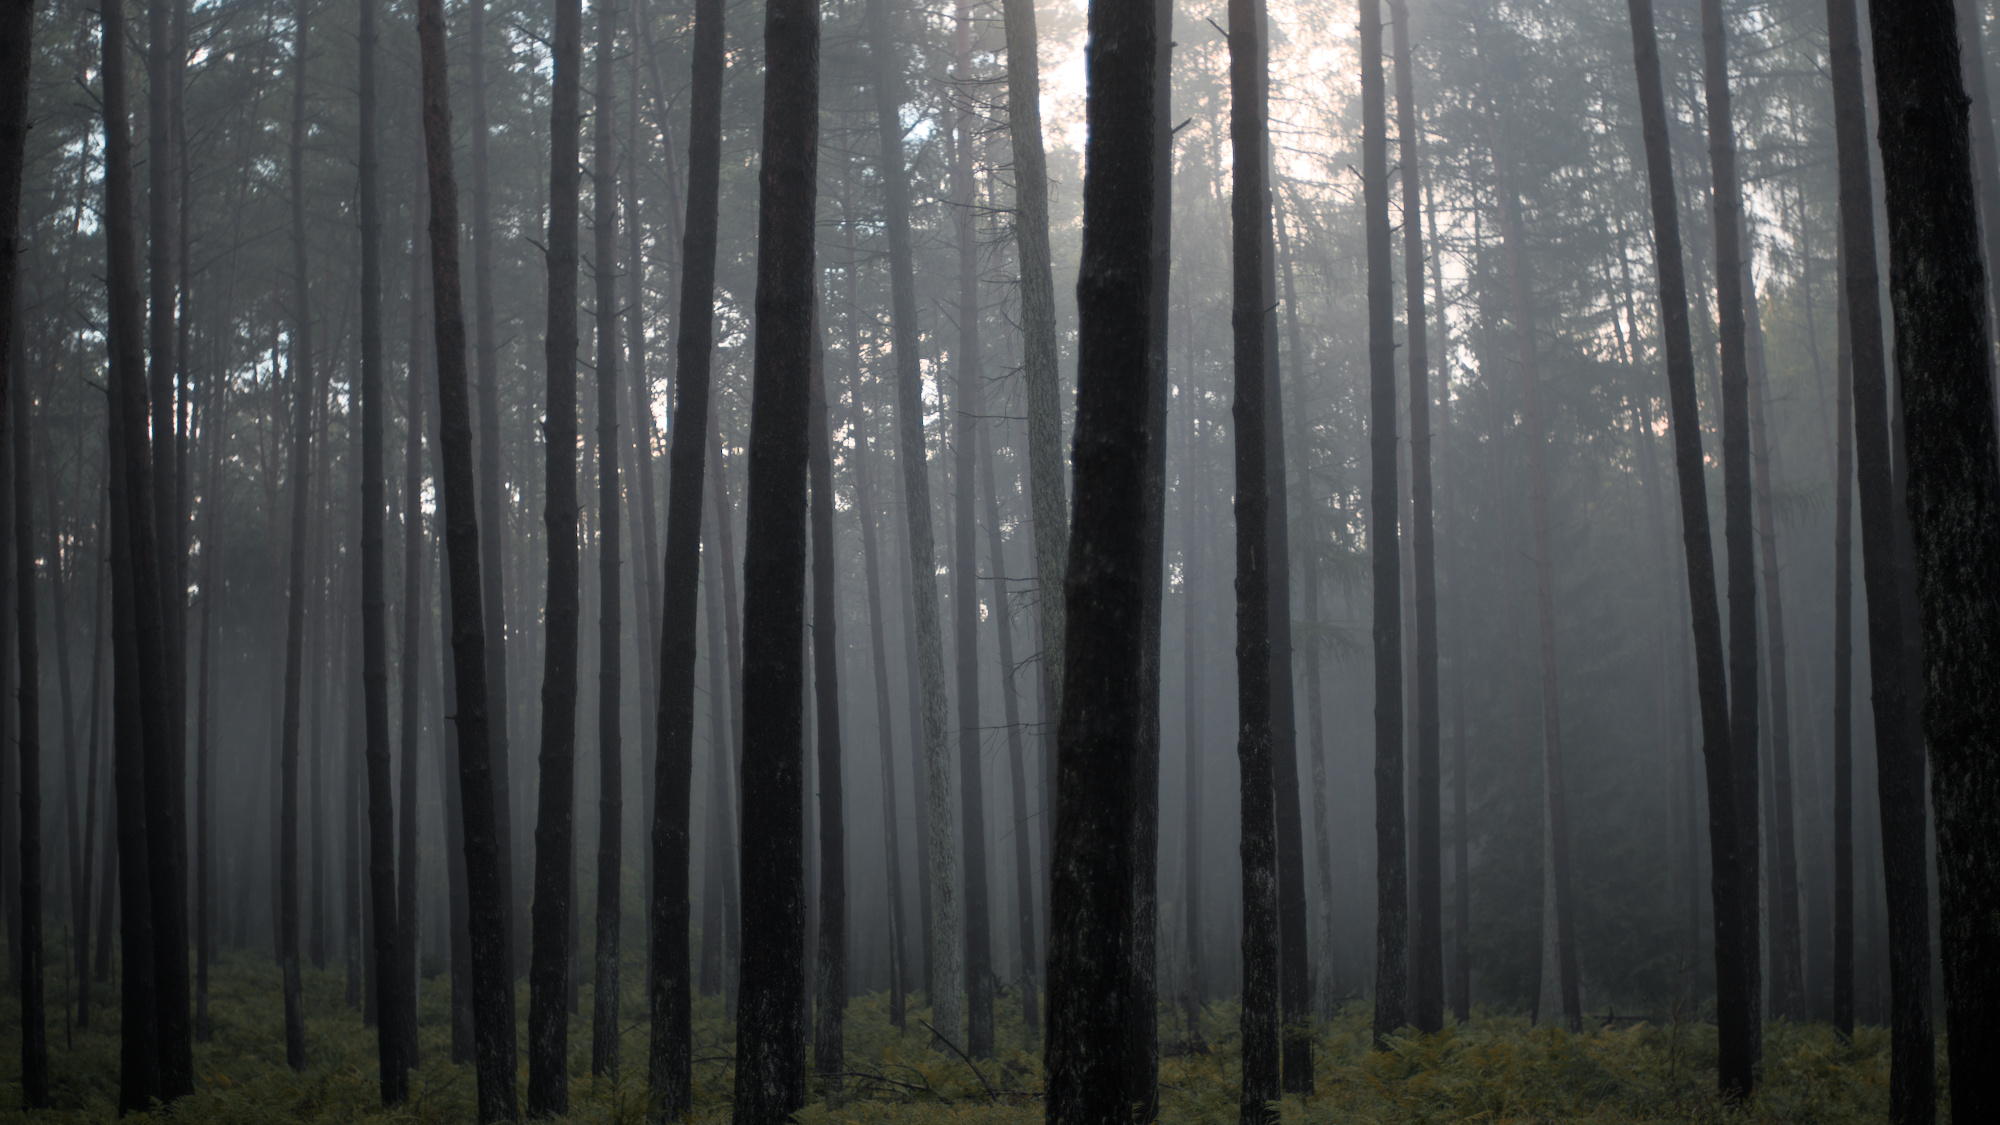 Szenerie im Wald mit einigen Nadel- und Laubbäumen. Nebel zieht auf